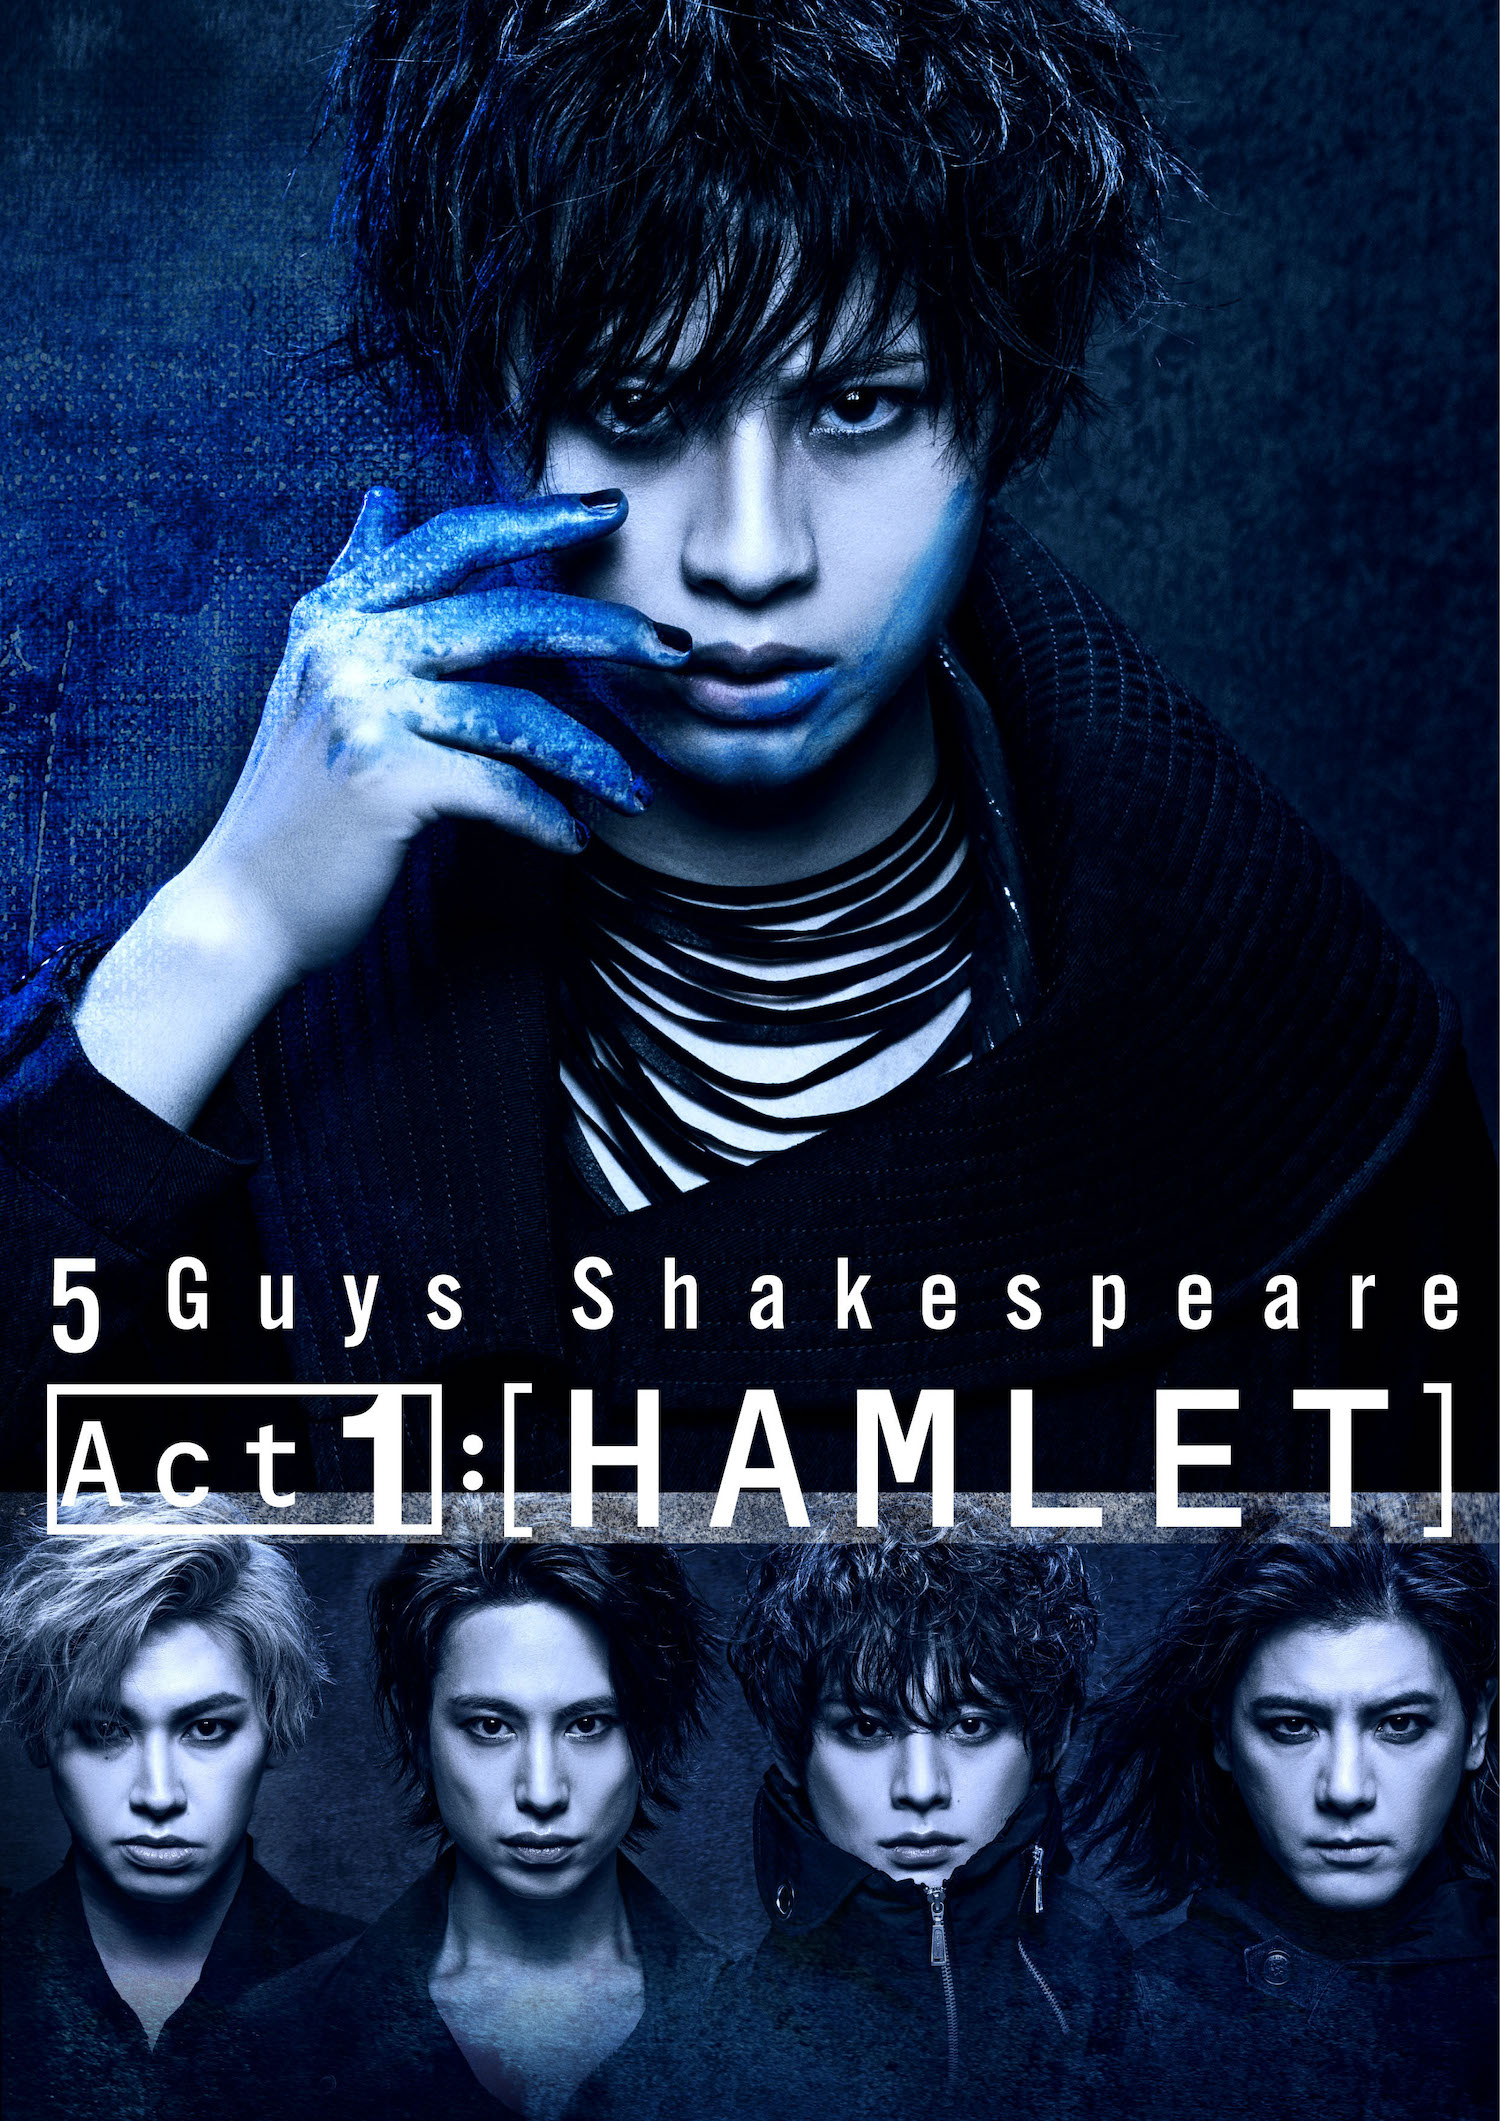 岡宮来夢主演、5 Guys Shakespeare Act1:[HAMLET]メインビジュアル公開 イメージ画像